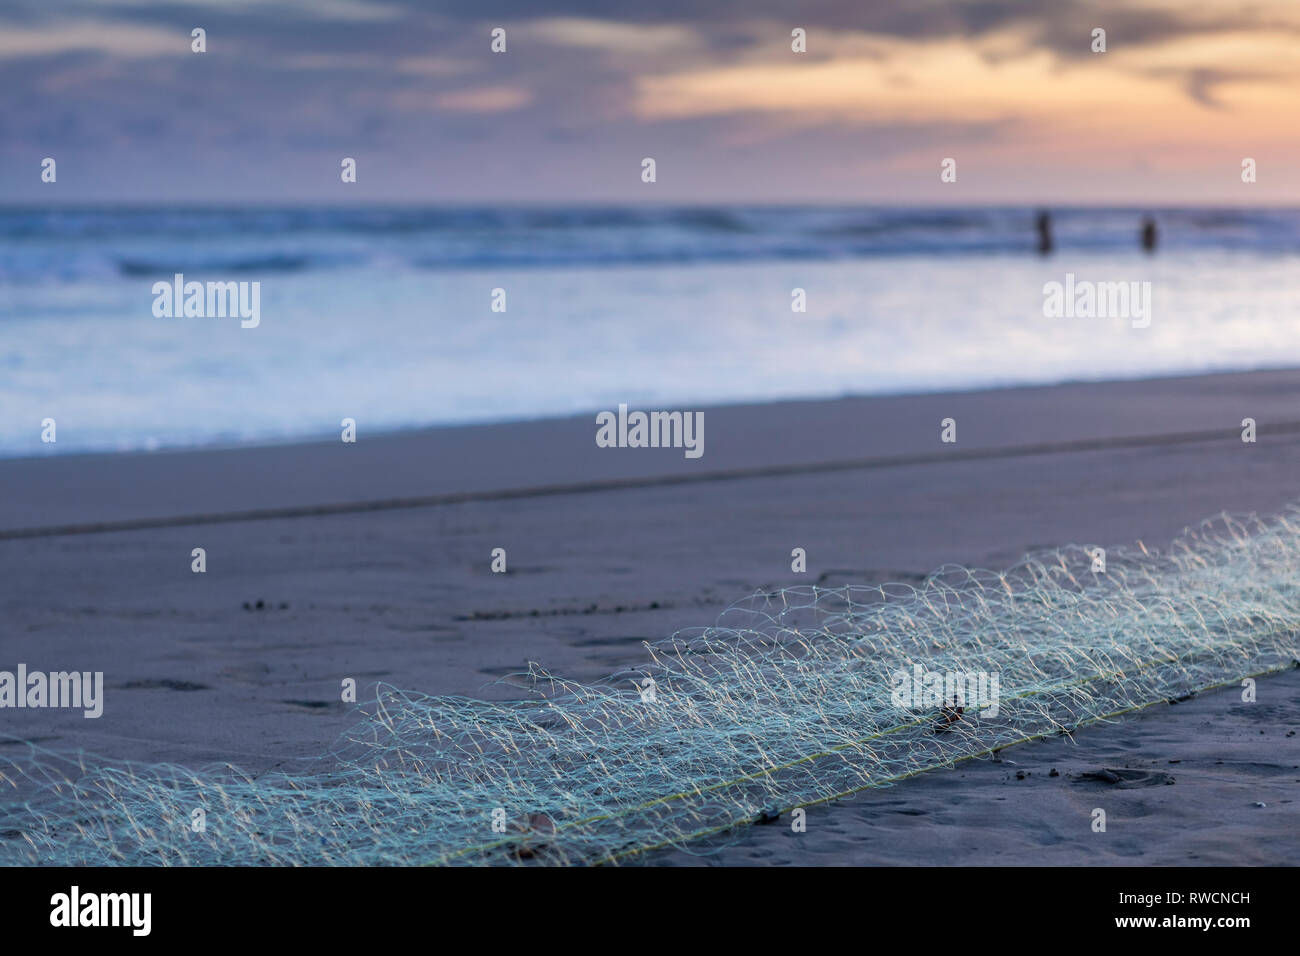 Fischernetz an einem Sandstrand der Mexikanischen Strand mit drei Leute im Wasser im Hintergrund stehend Stockfoto